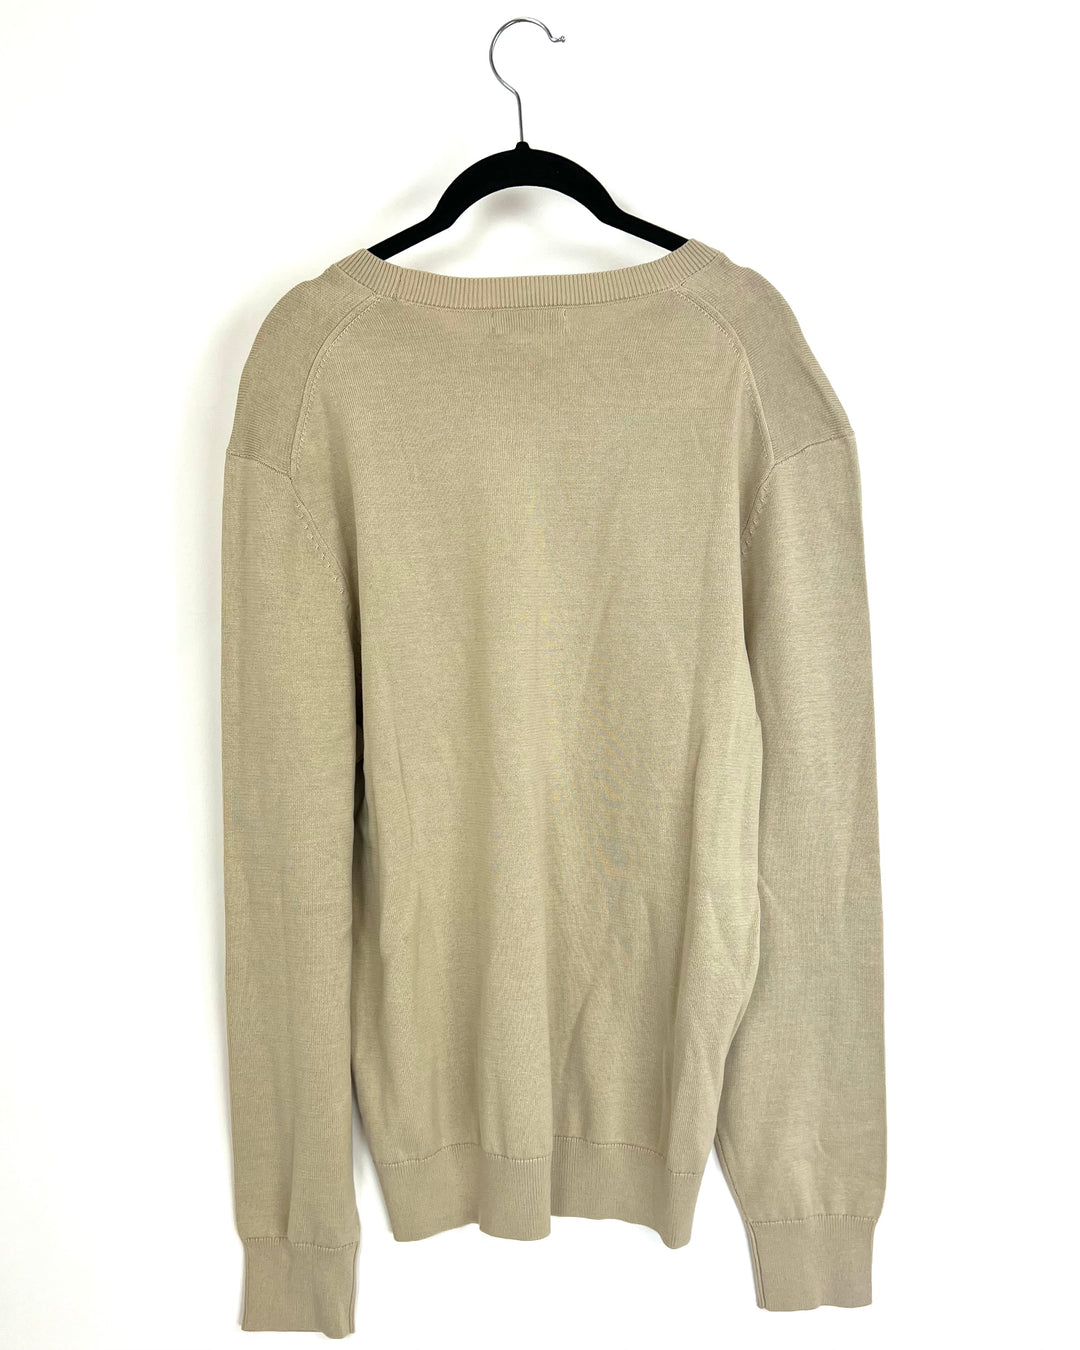 MENS Beige Sweater - Medium